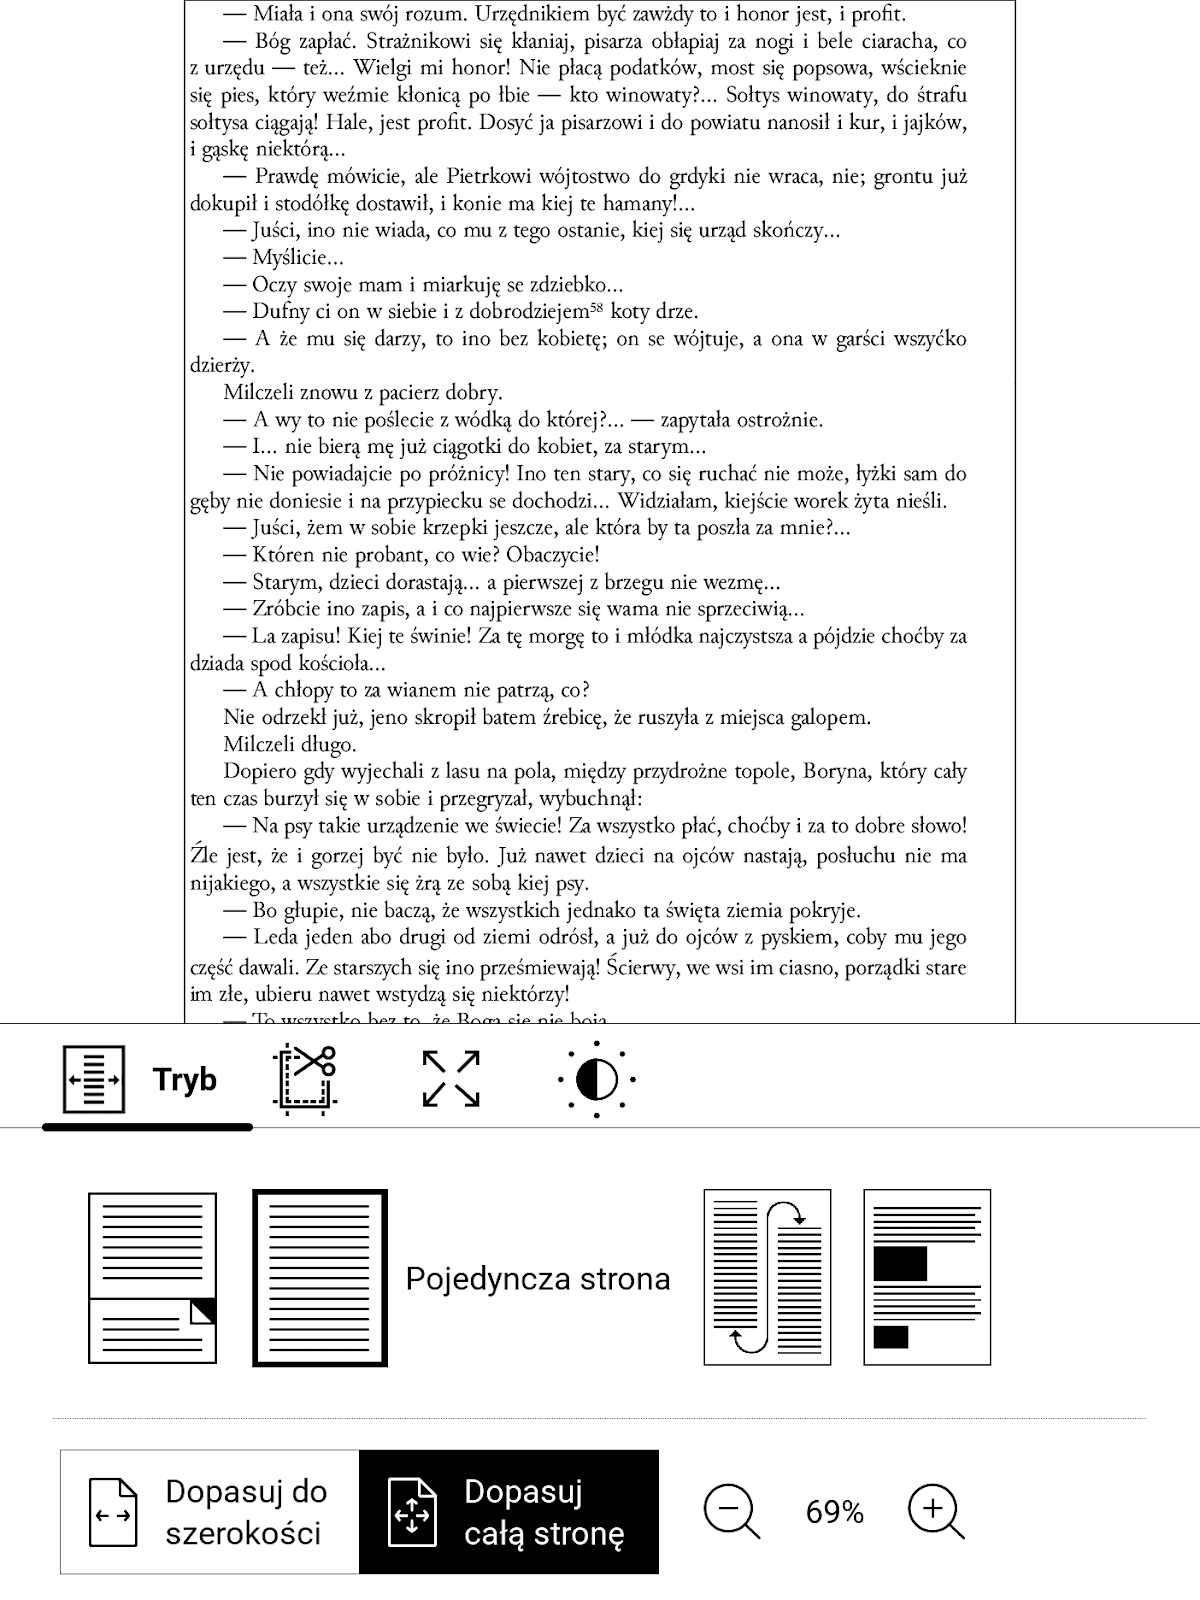 PocketBook InkPad 4 – strona pliku PDF przed włączeniem trybu reflow